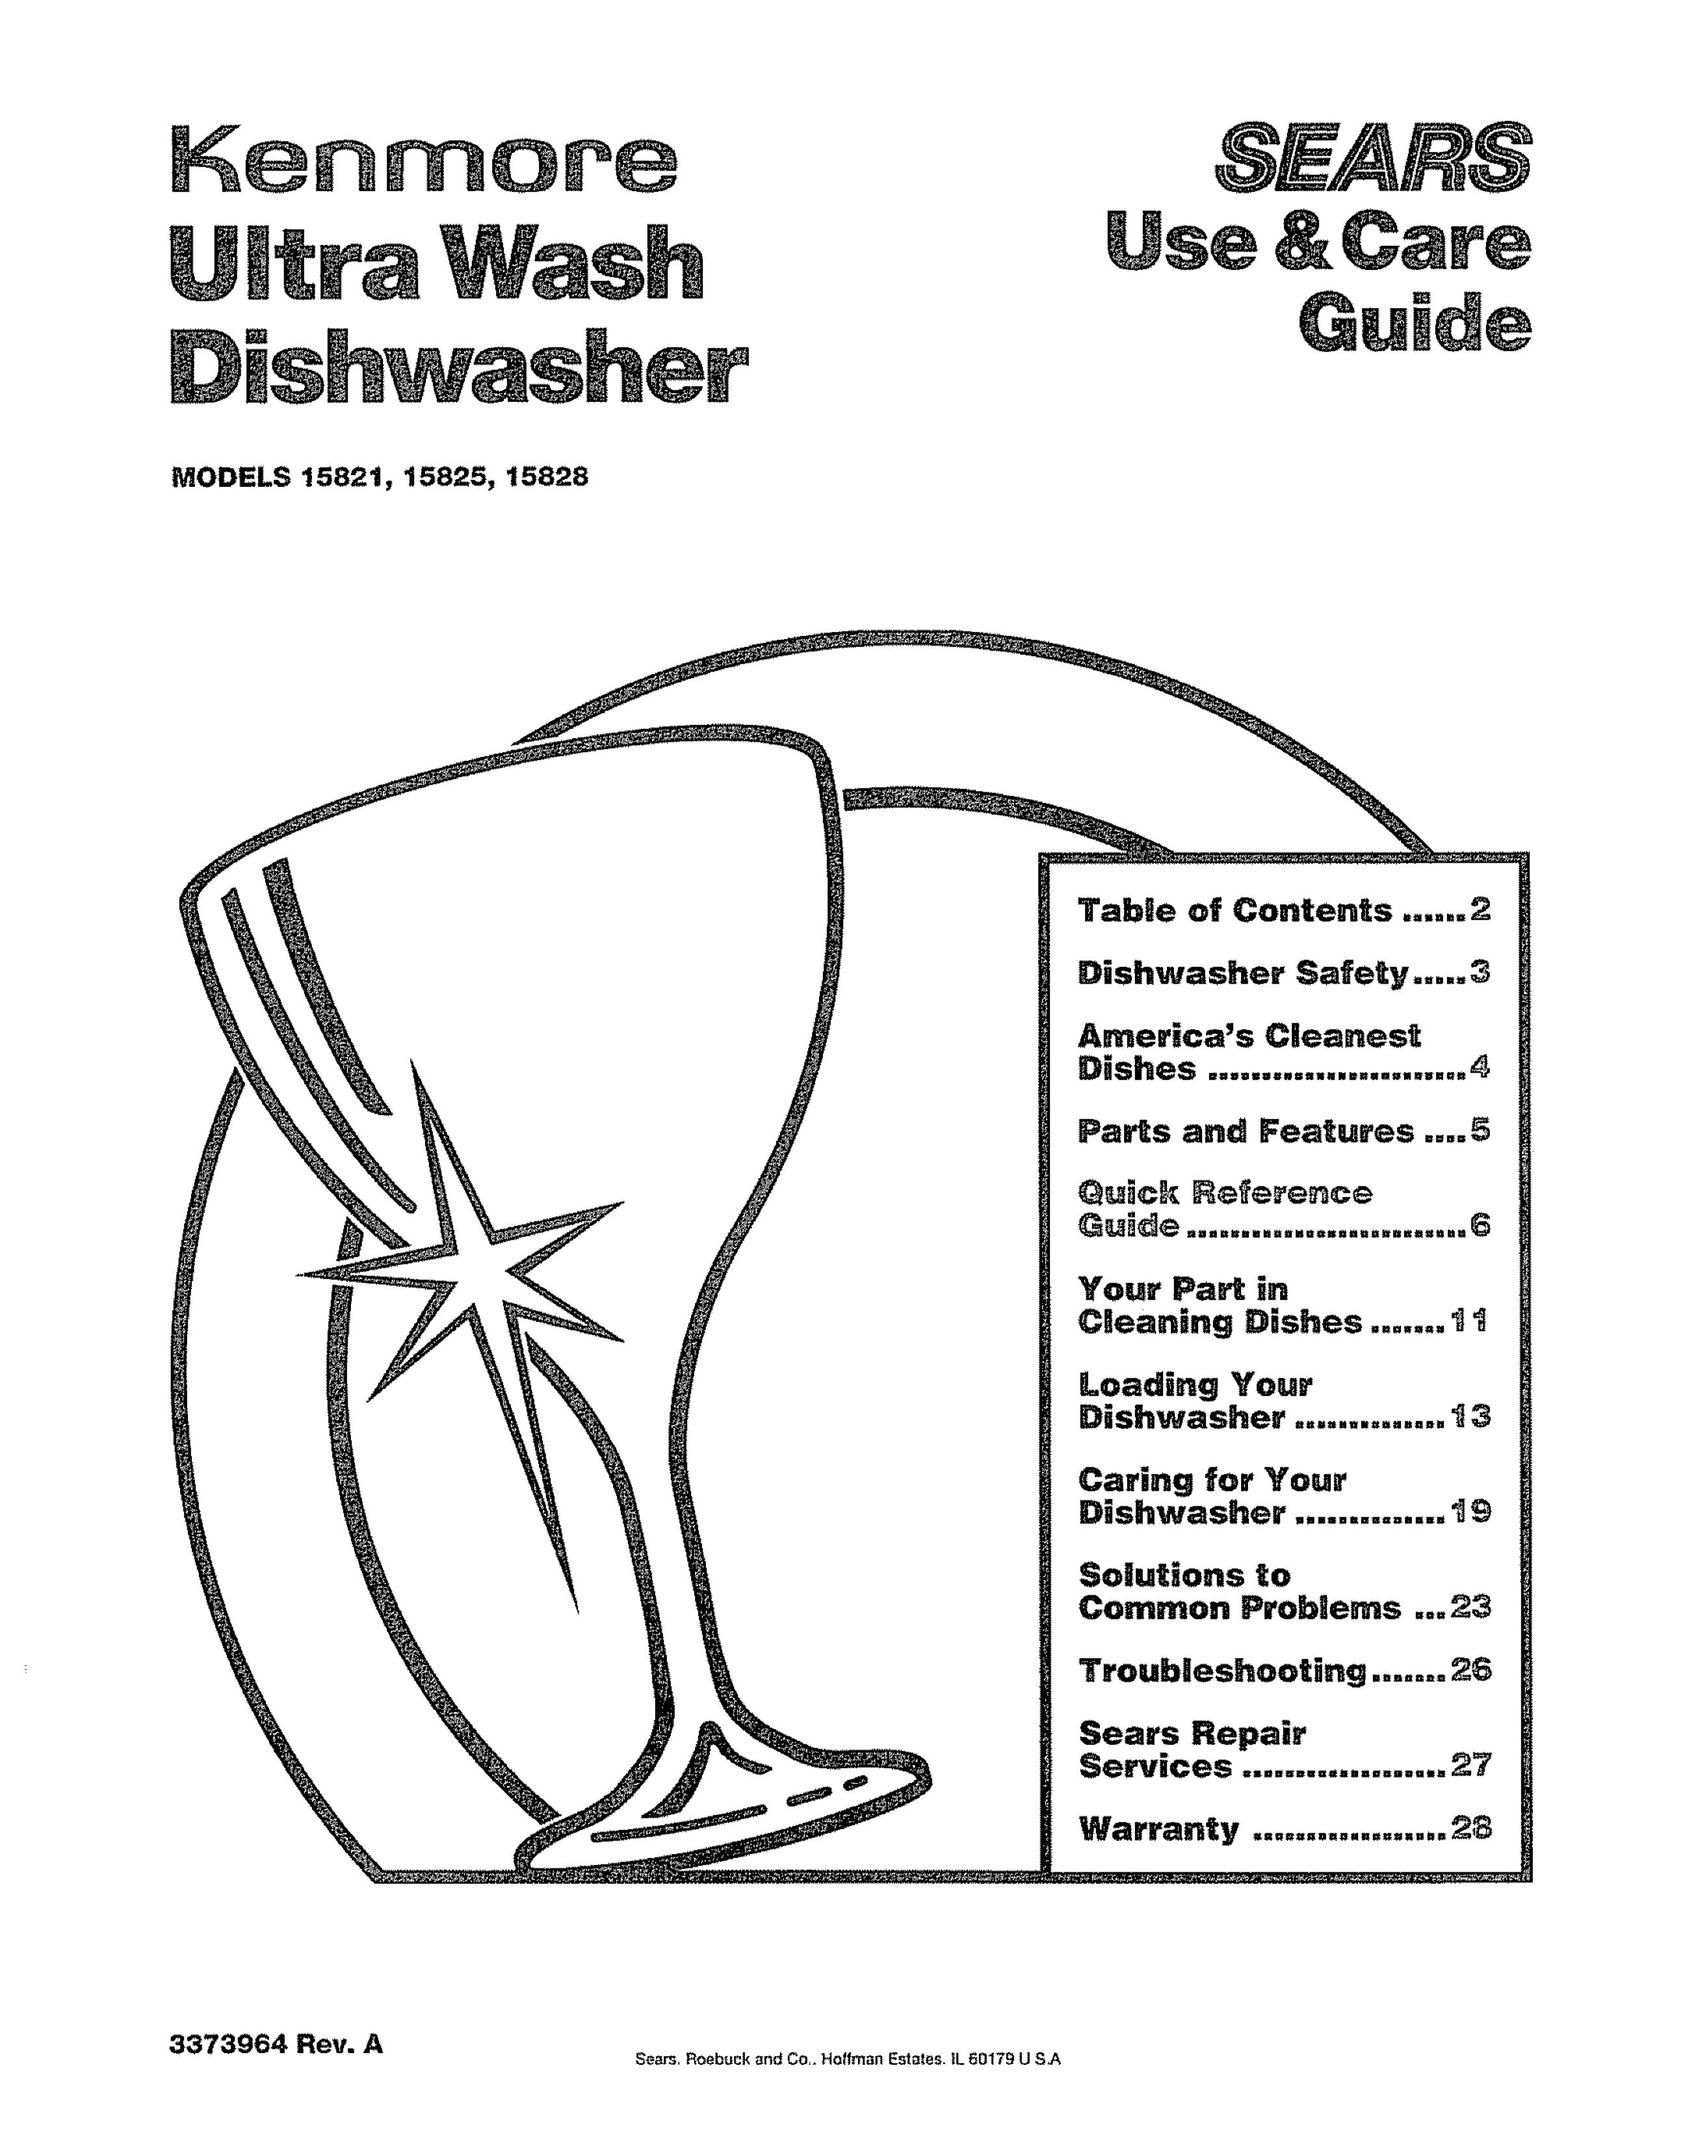 Kenmore 15828 Dishwasher User Manual